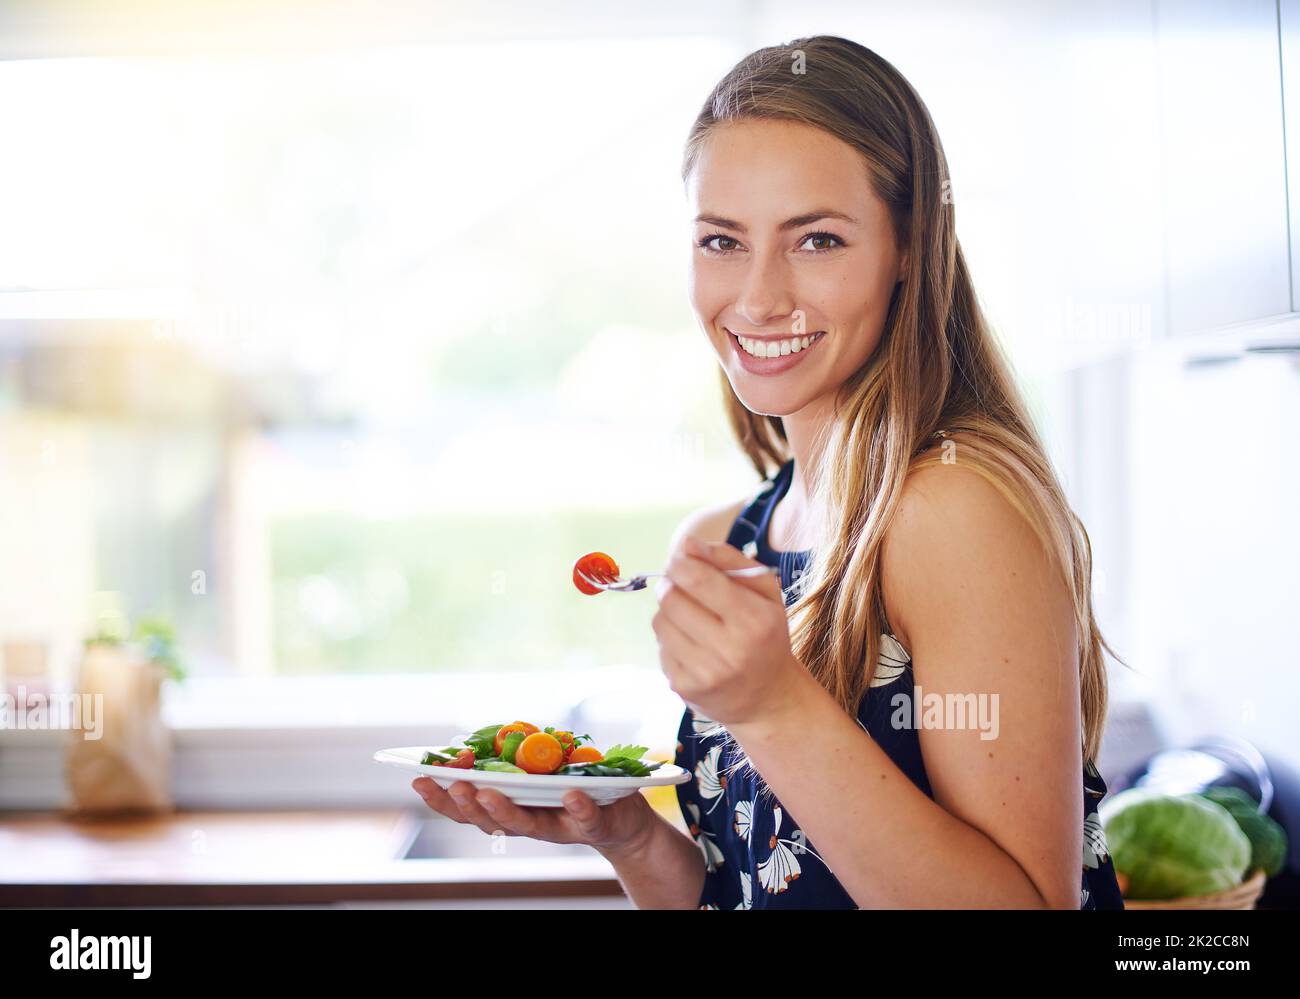 Manger sainement pour vivre en bonne santé. Portrait d'une jeune femme mangeant un bol de fraises à la maison. Banque D'Images